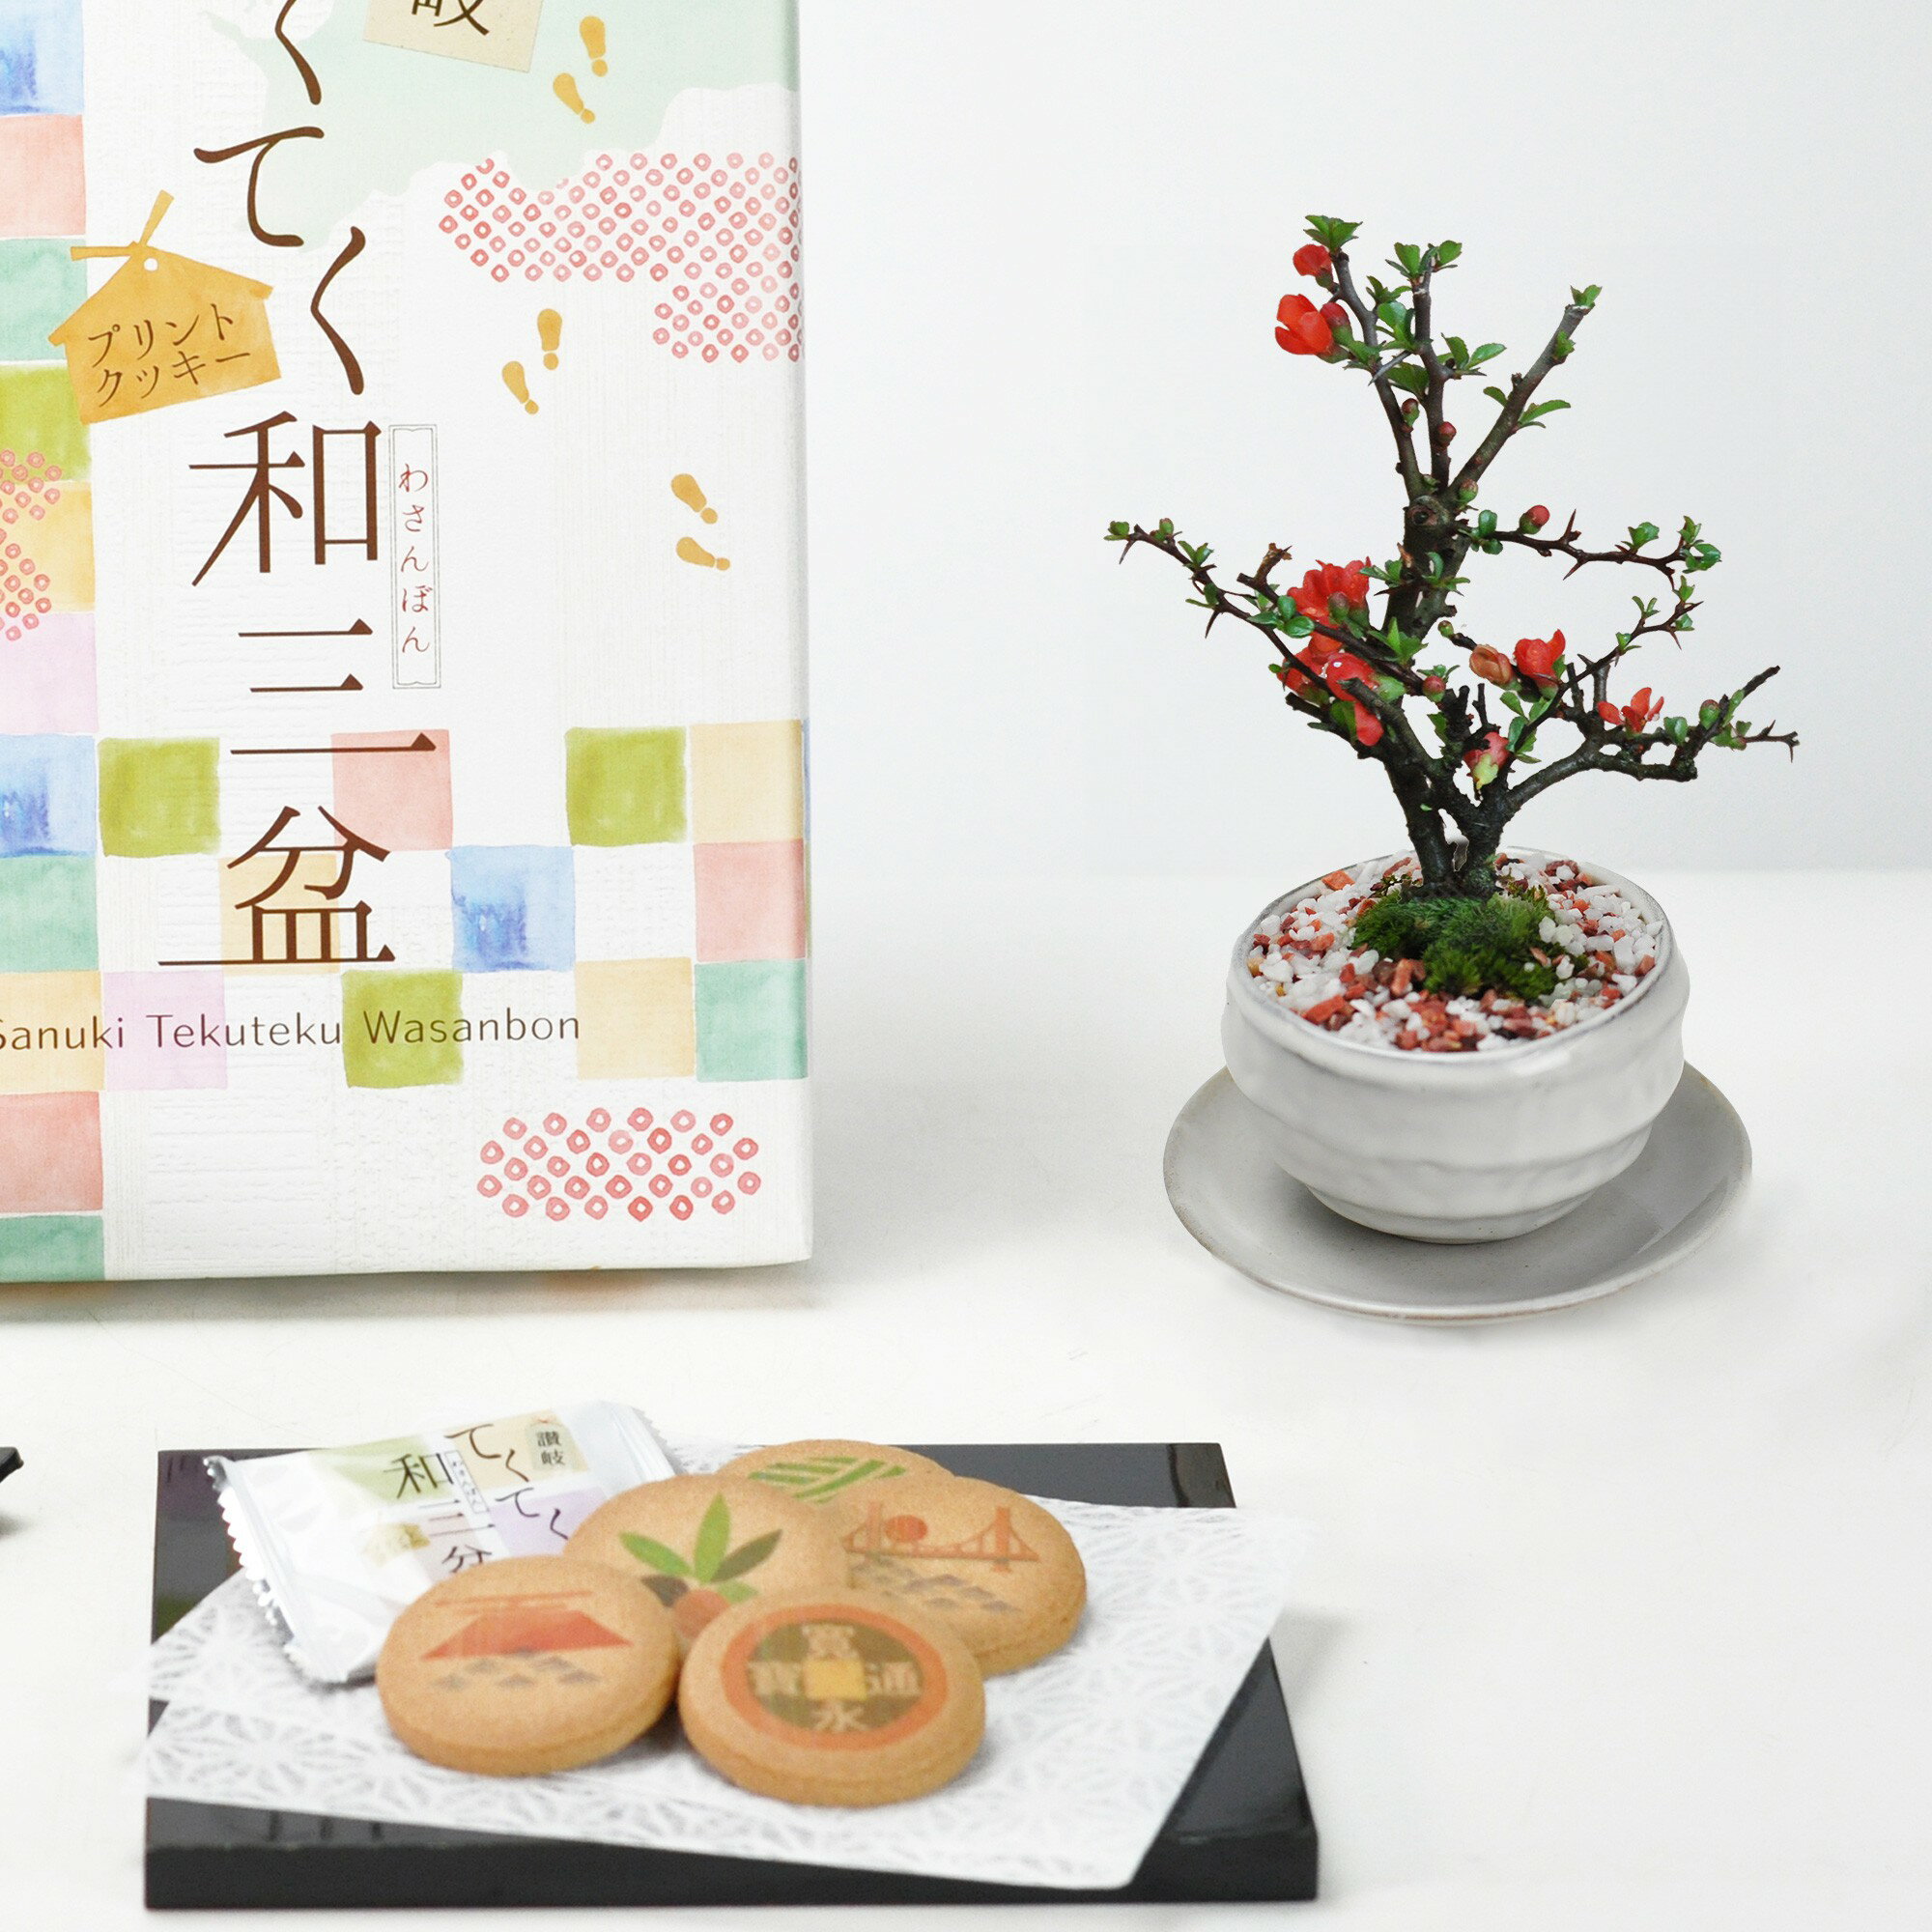 盆栽 ミニ長寿梅白波和鉢(受け皿付き)と和三盆クッキーセット ミニ盆栽 ギフト プレゼント 贈り物 鉢植え 鉢花 スイーツ 焼き菓子 bonsai